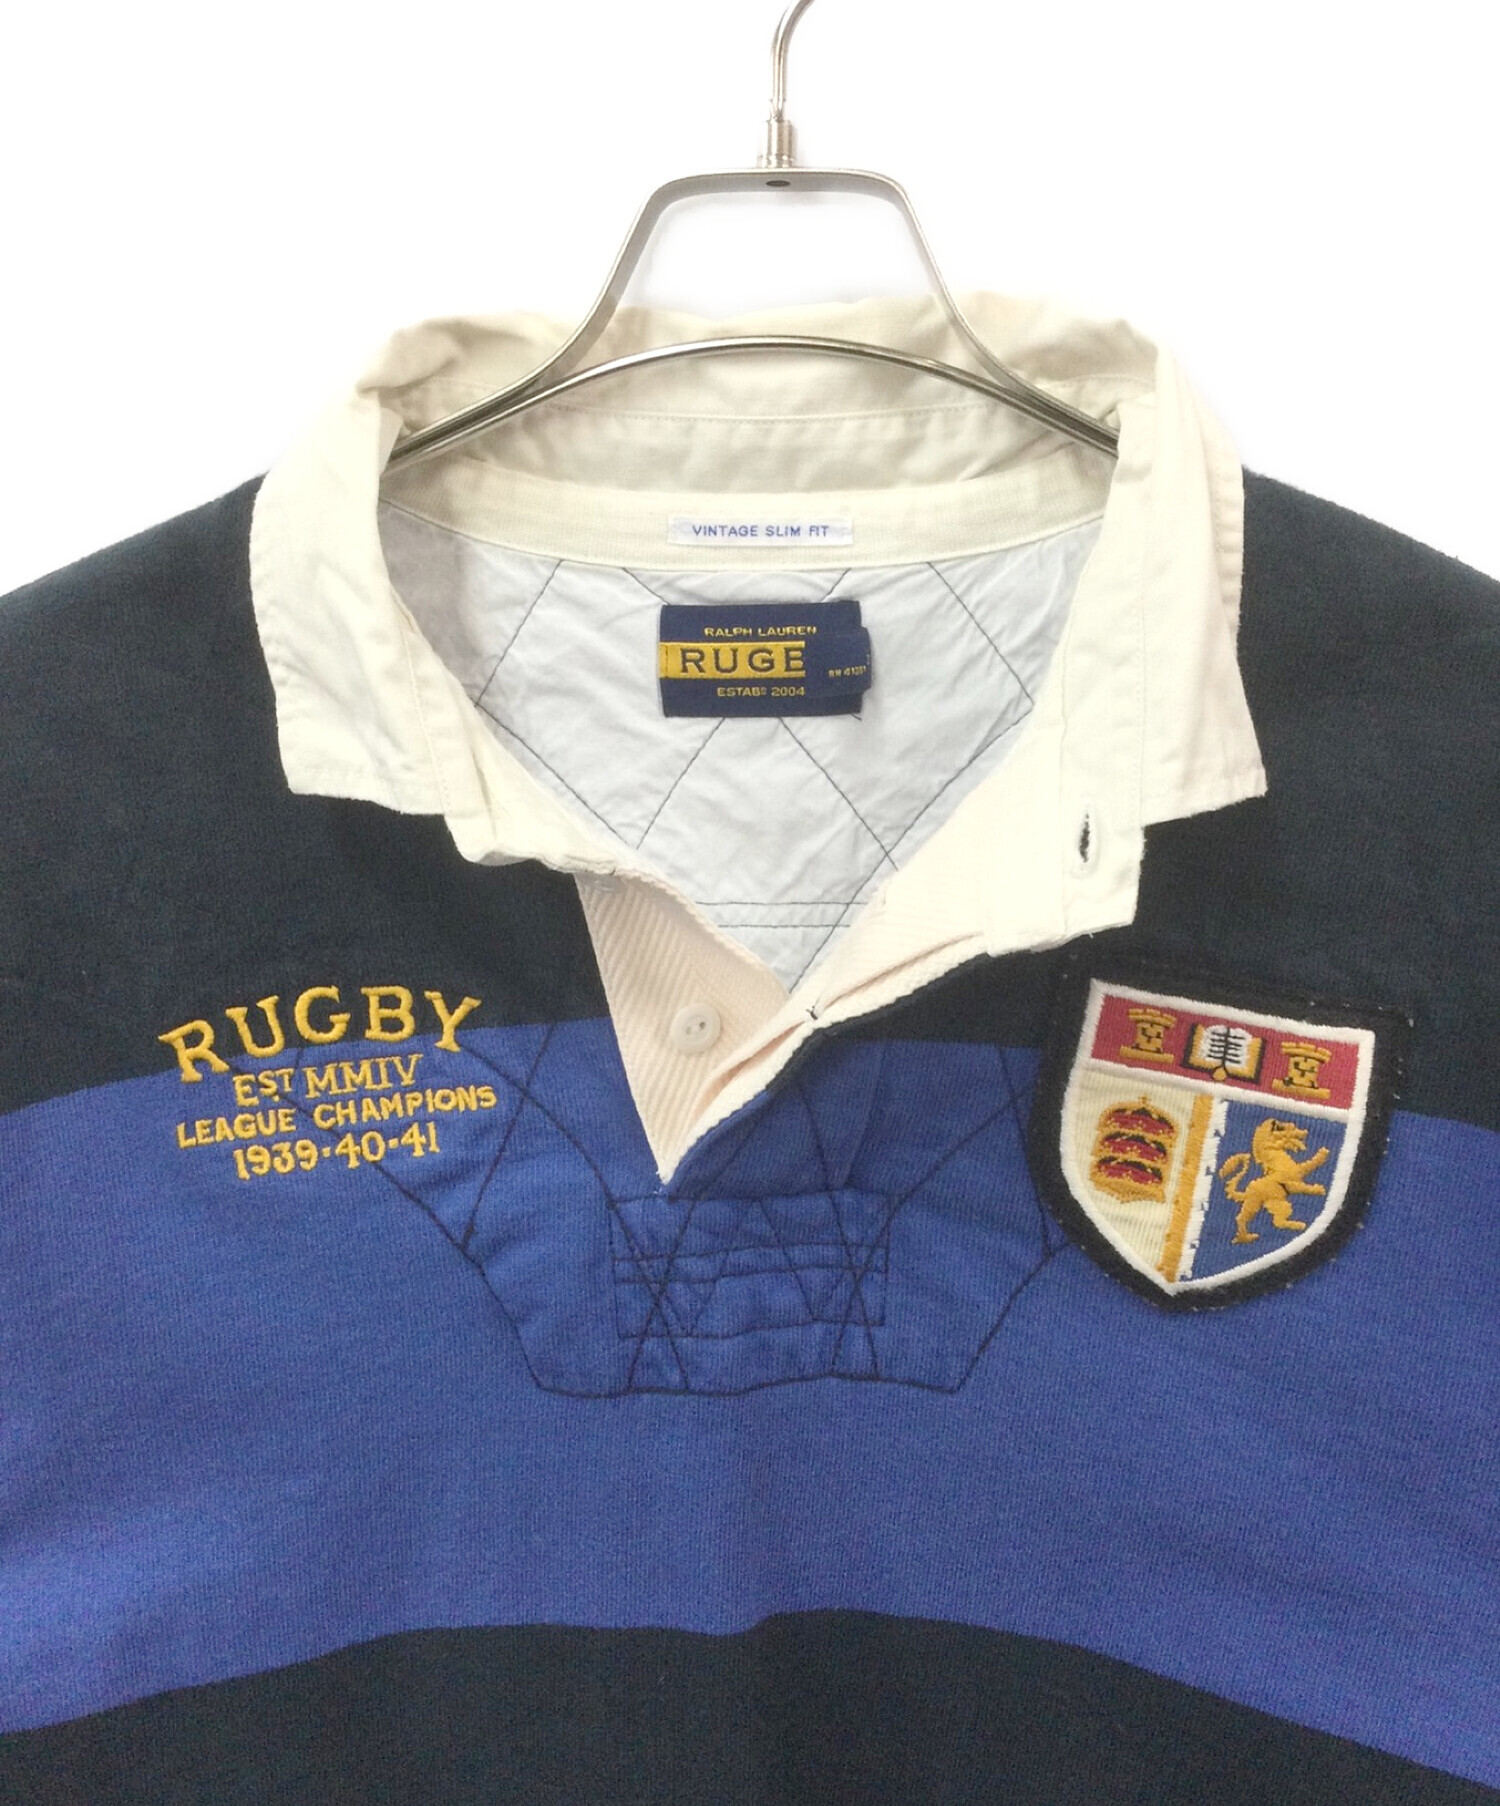 Rugby Ralph Lauren (ラグビーラルフローレン) ヴィンテージラガーシャツ ネイビー×ブルー サイズ:L